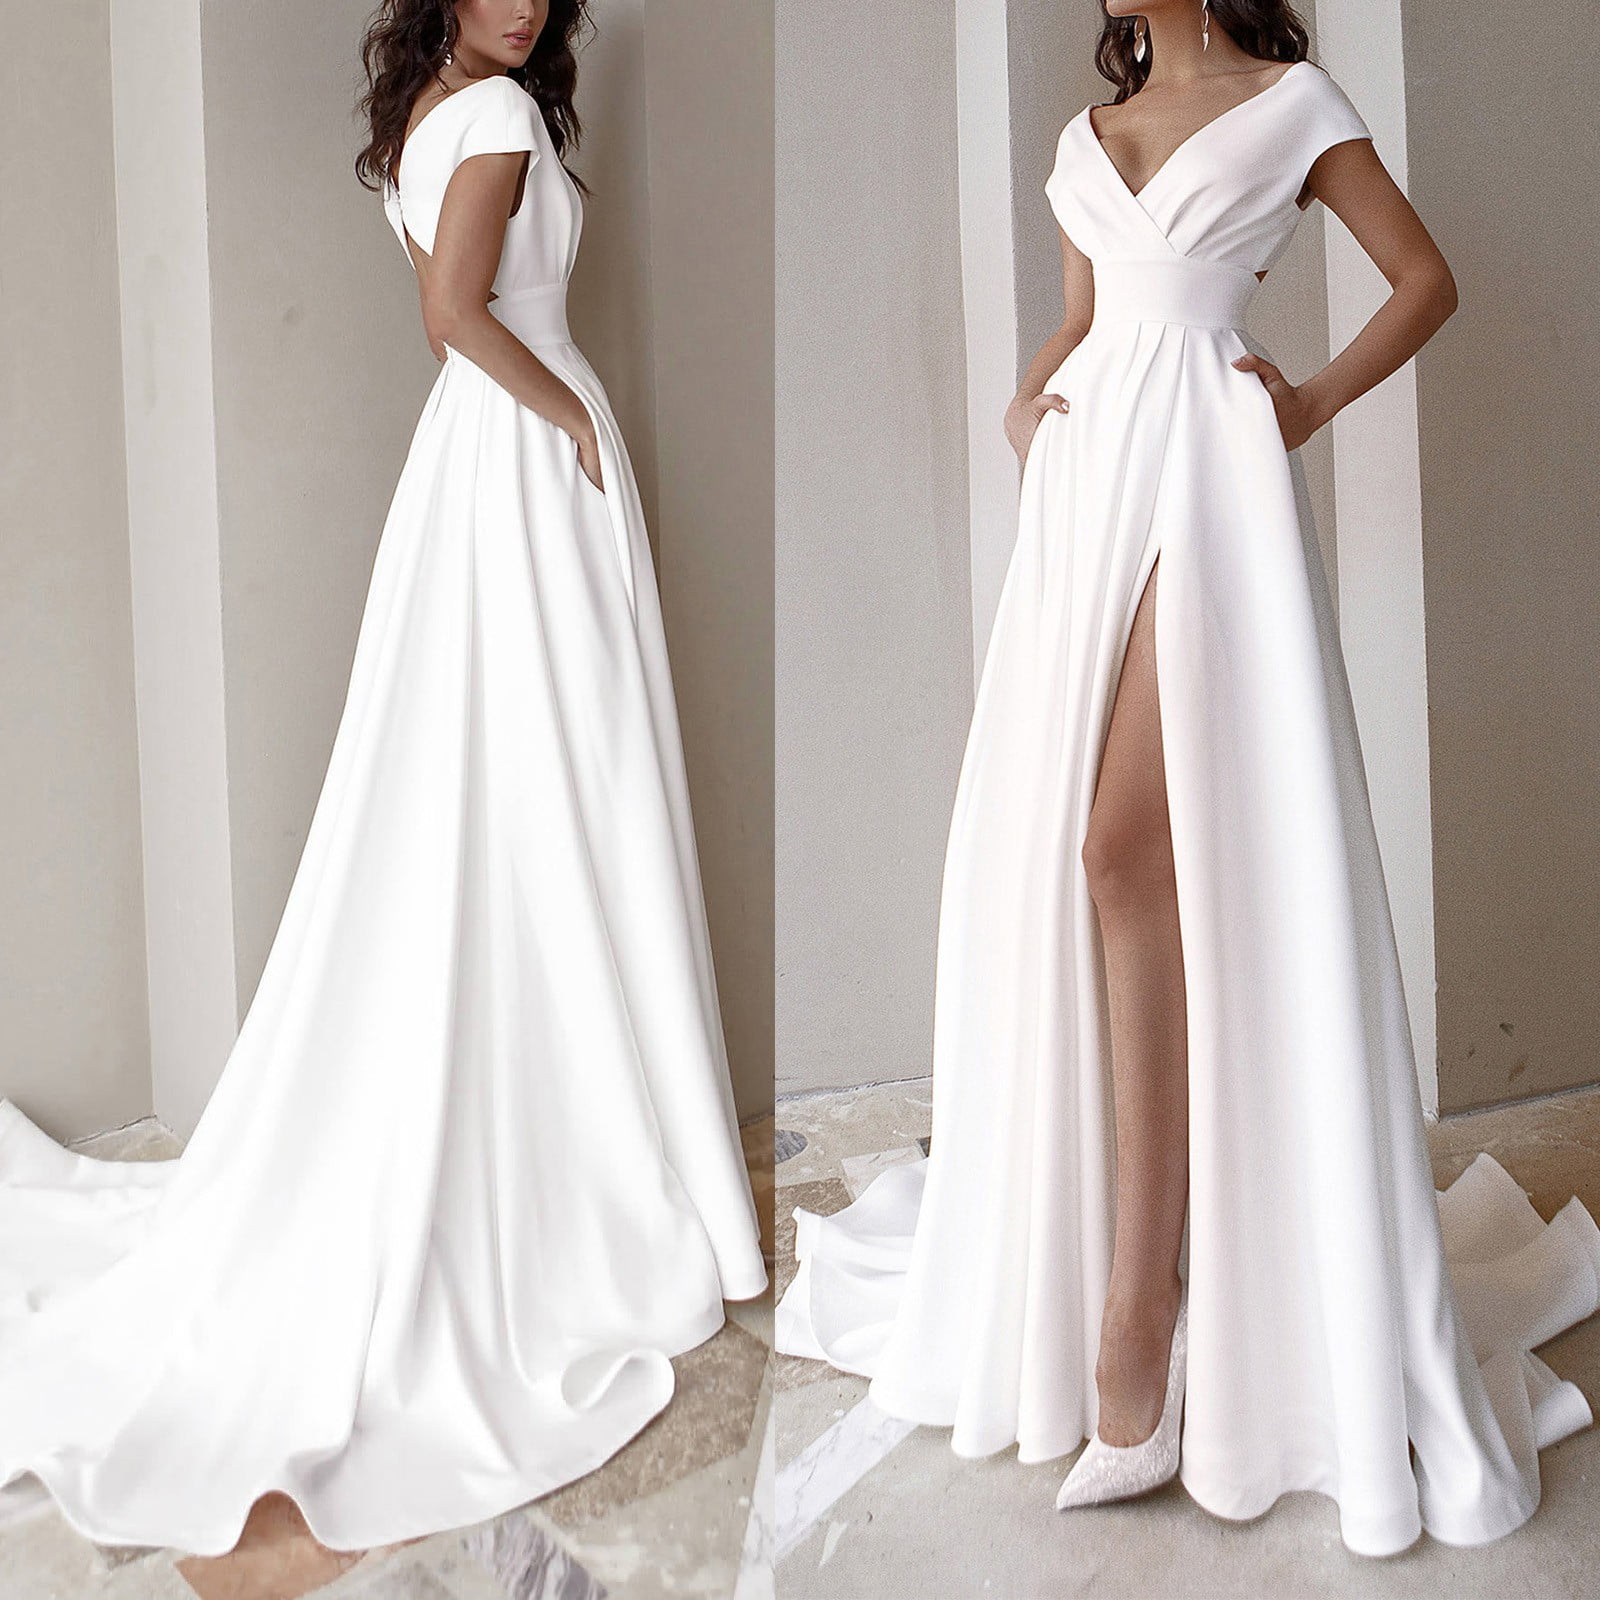 white dress formal